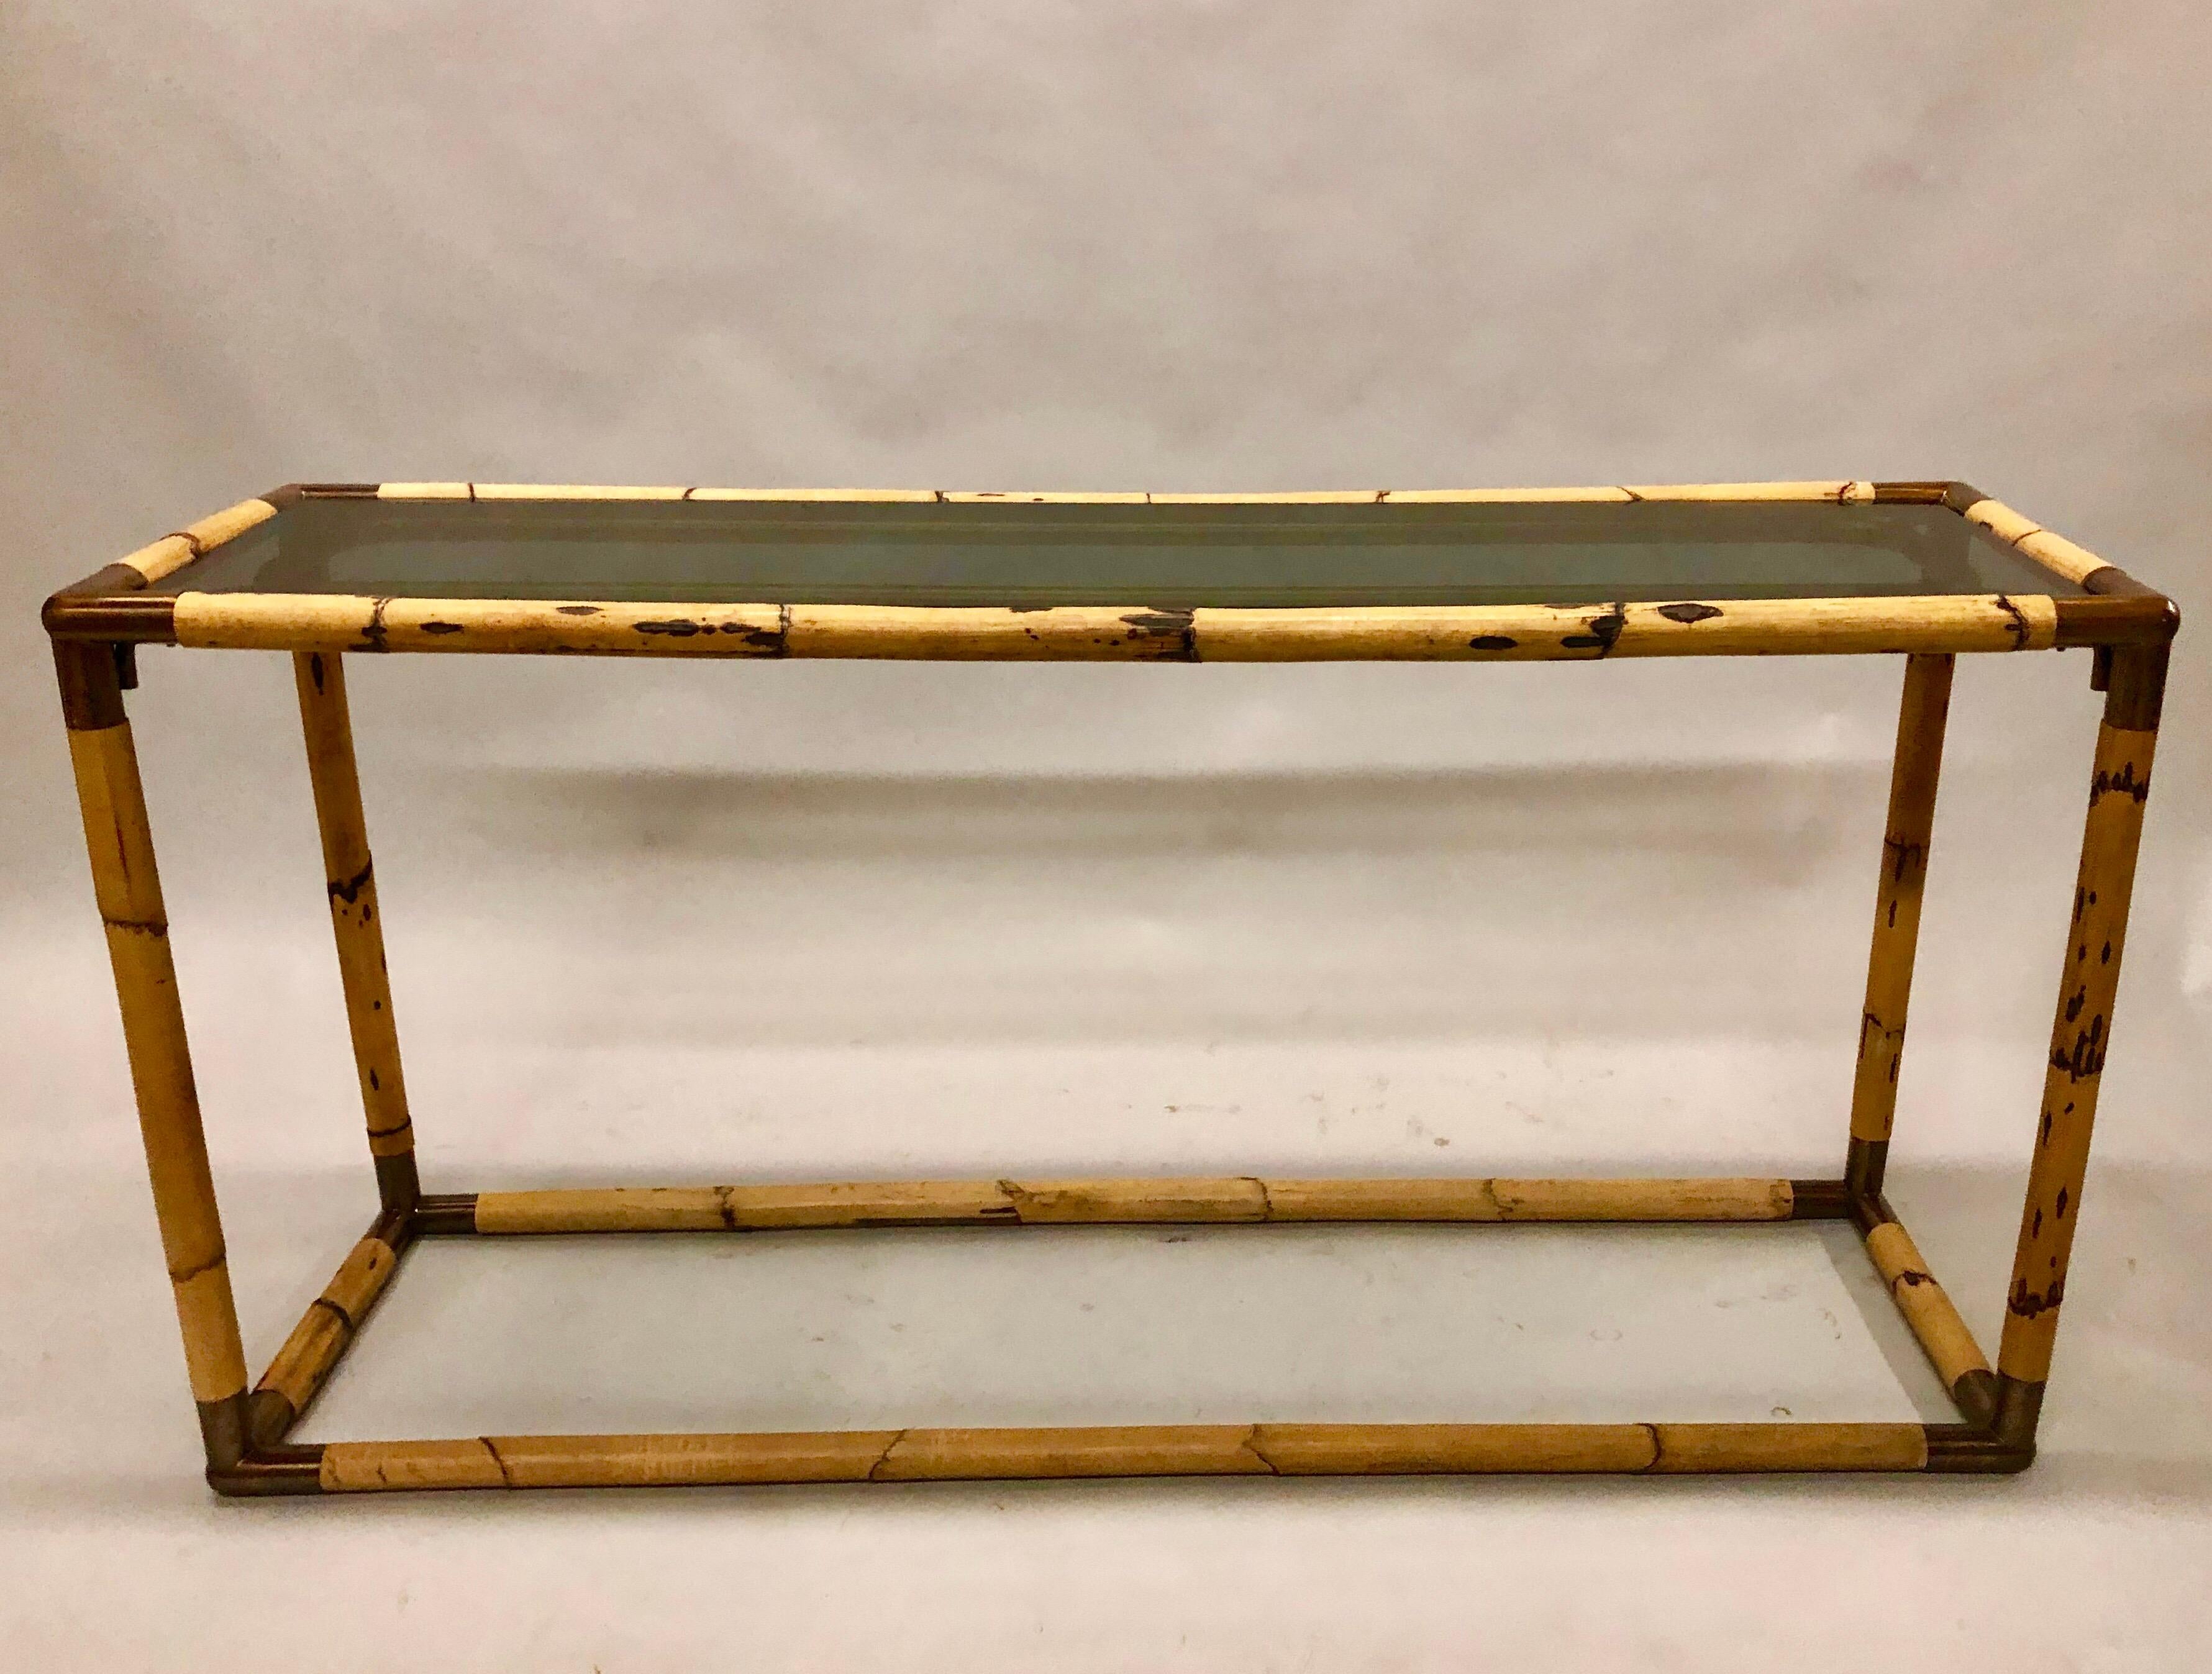 Eine elegante italienische Mid-Century Modern Bambus / Rattan und Rauchglas Konsole oder Sofa Tisch von Giovanni Banci um 1970. Die Original-Rauchglasplatte gehört zum Stück.

Giovanni Banci war ein florentinischer Bildhauer und Möbeldesigner. Seine